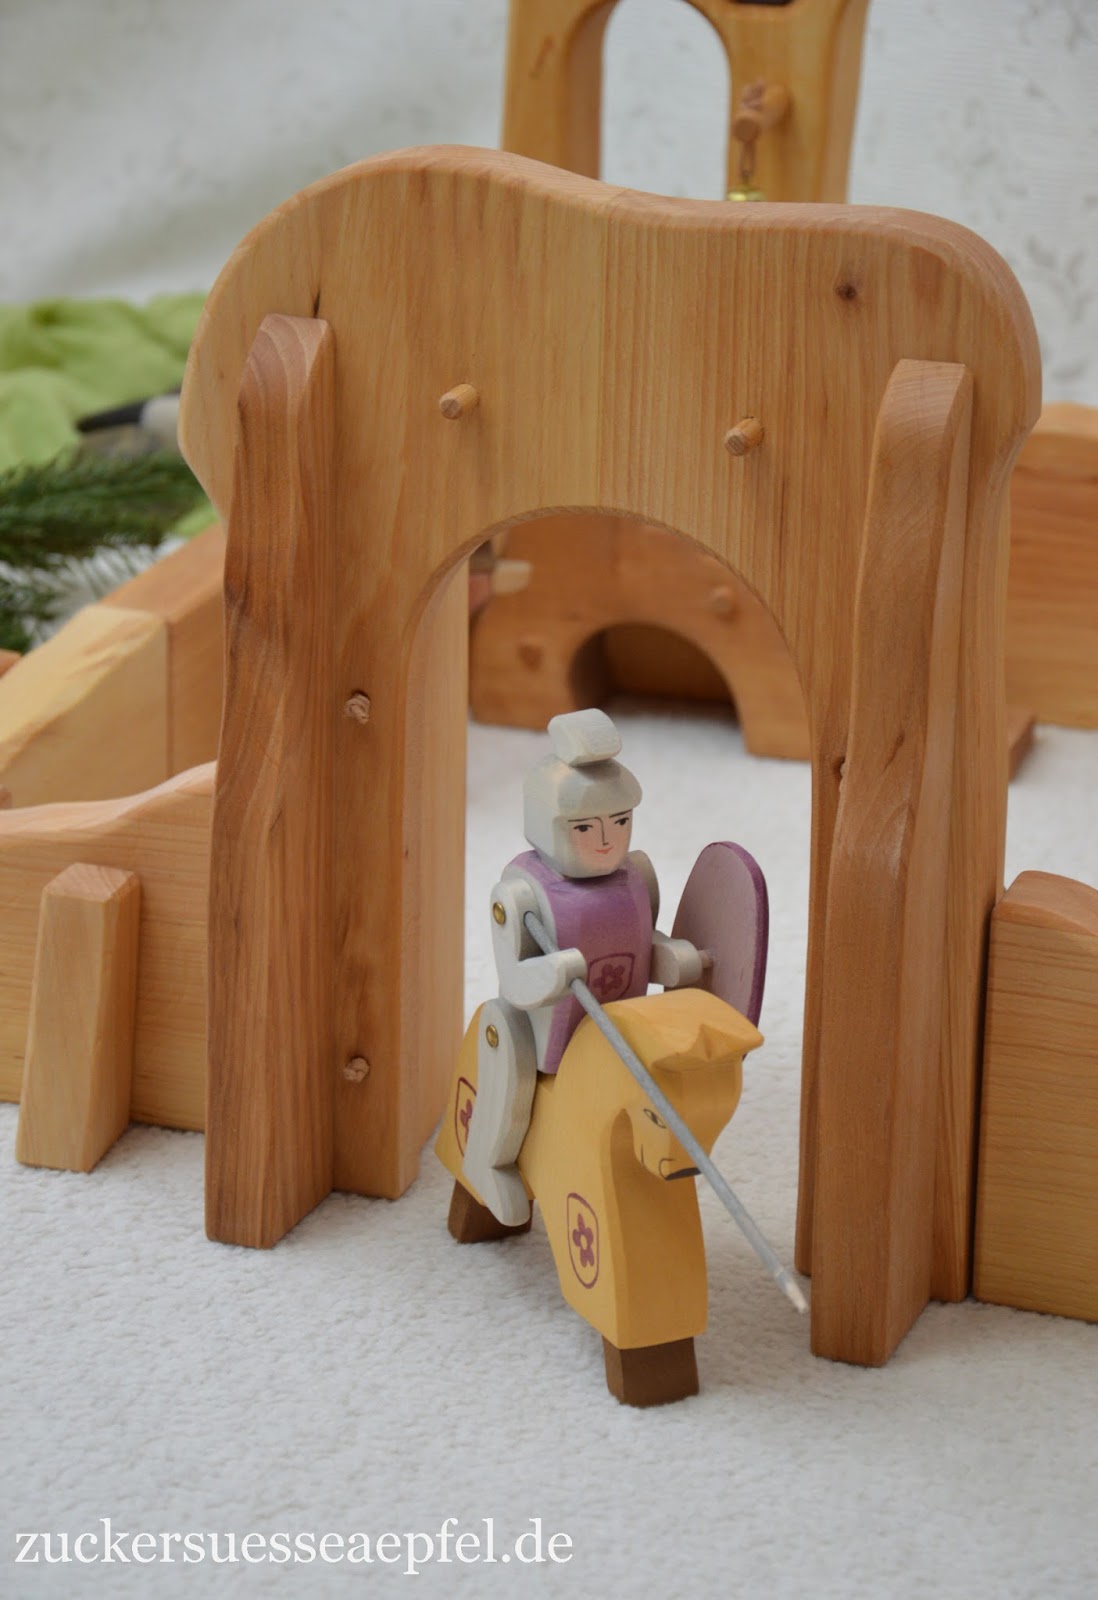 Jolinas Welt Anzeige Warum Kinder Spielzeug Von Fisher Price Lieben